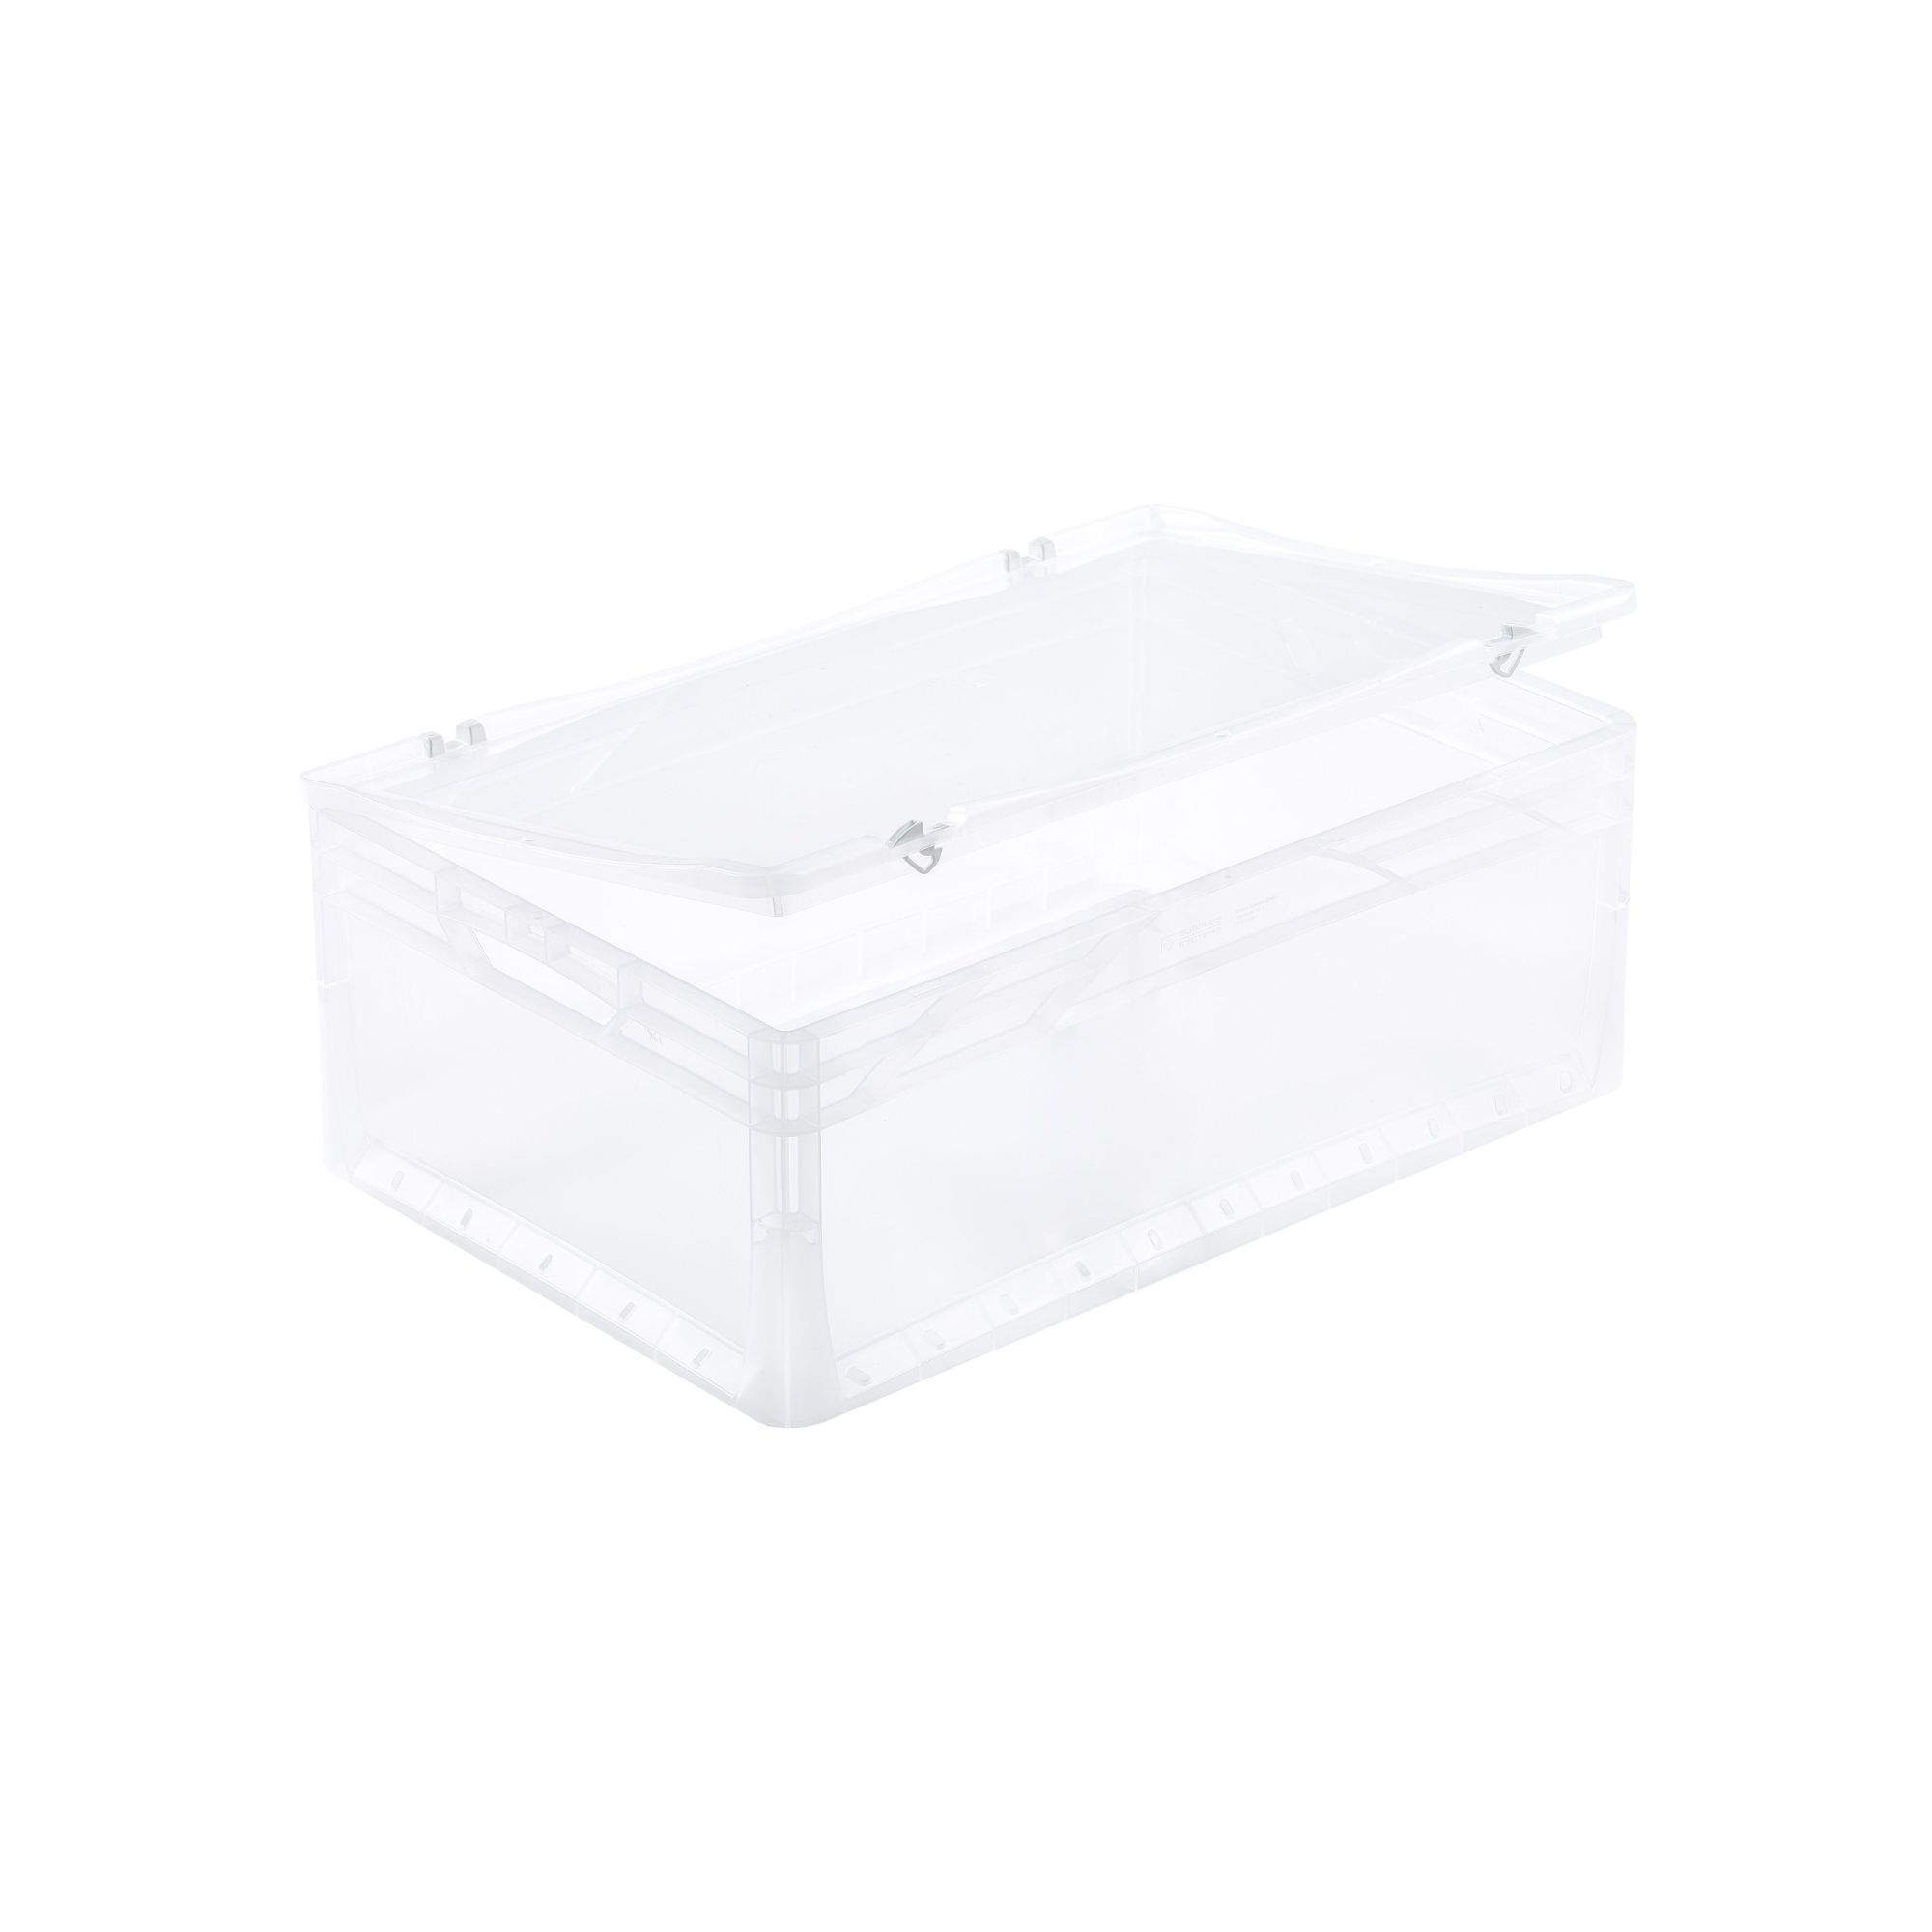 Auflagedeckel für transparente Eurobehälter BasicLine & LightLine | BxT 40x60cm | Eurobox, Transportbox, Transportbehälter, Stapelbehälter